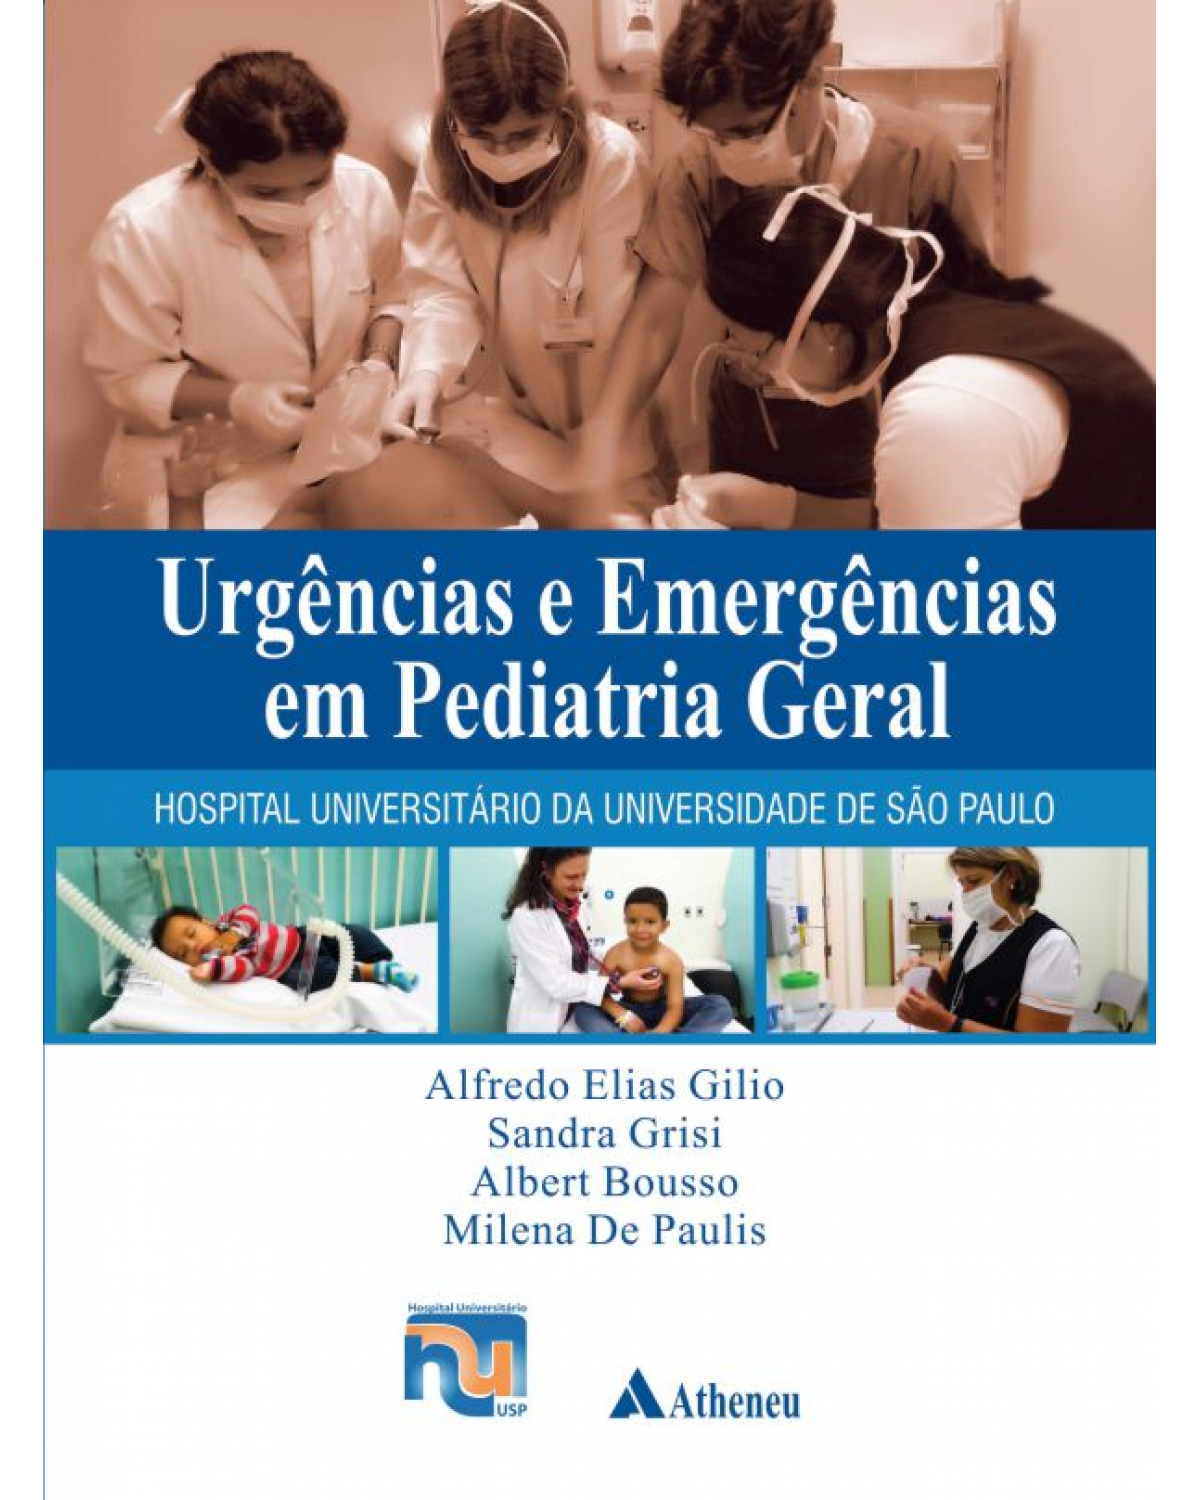 Urgências e emergências em pediatria geral - Hospital Universitário da Universidade de São Paulo - 1ª Edição | 2015